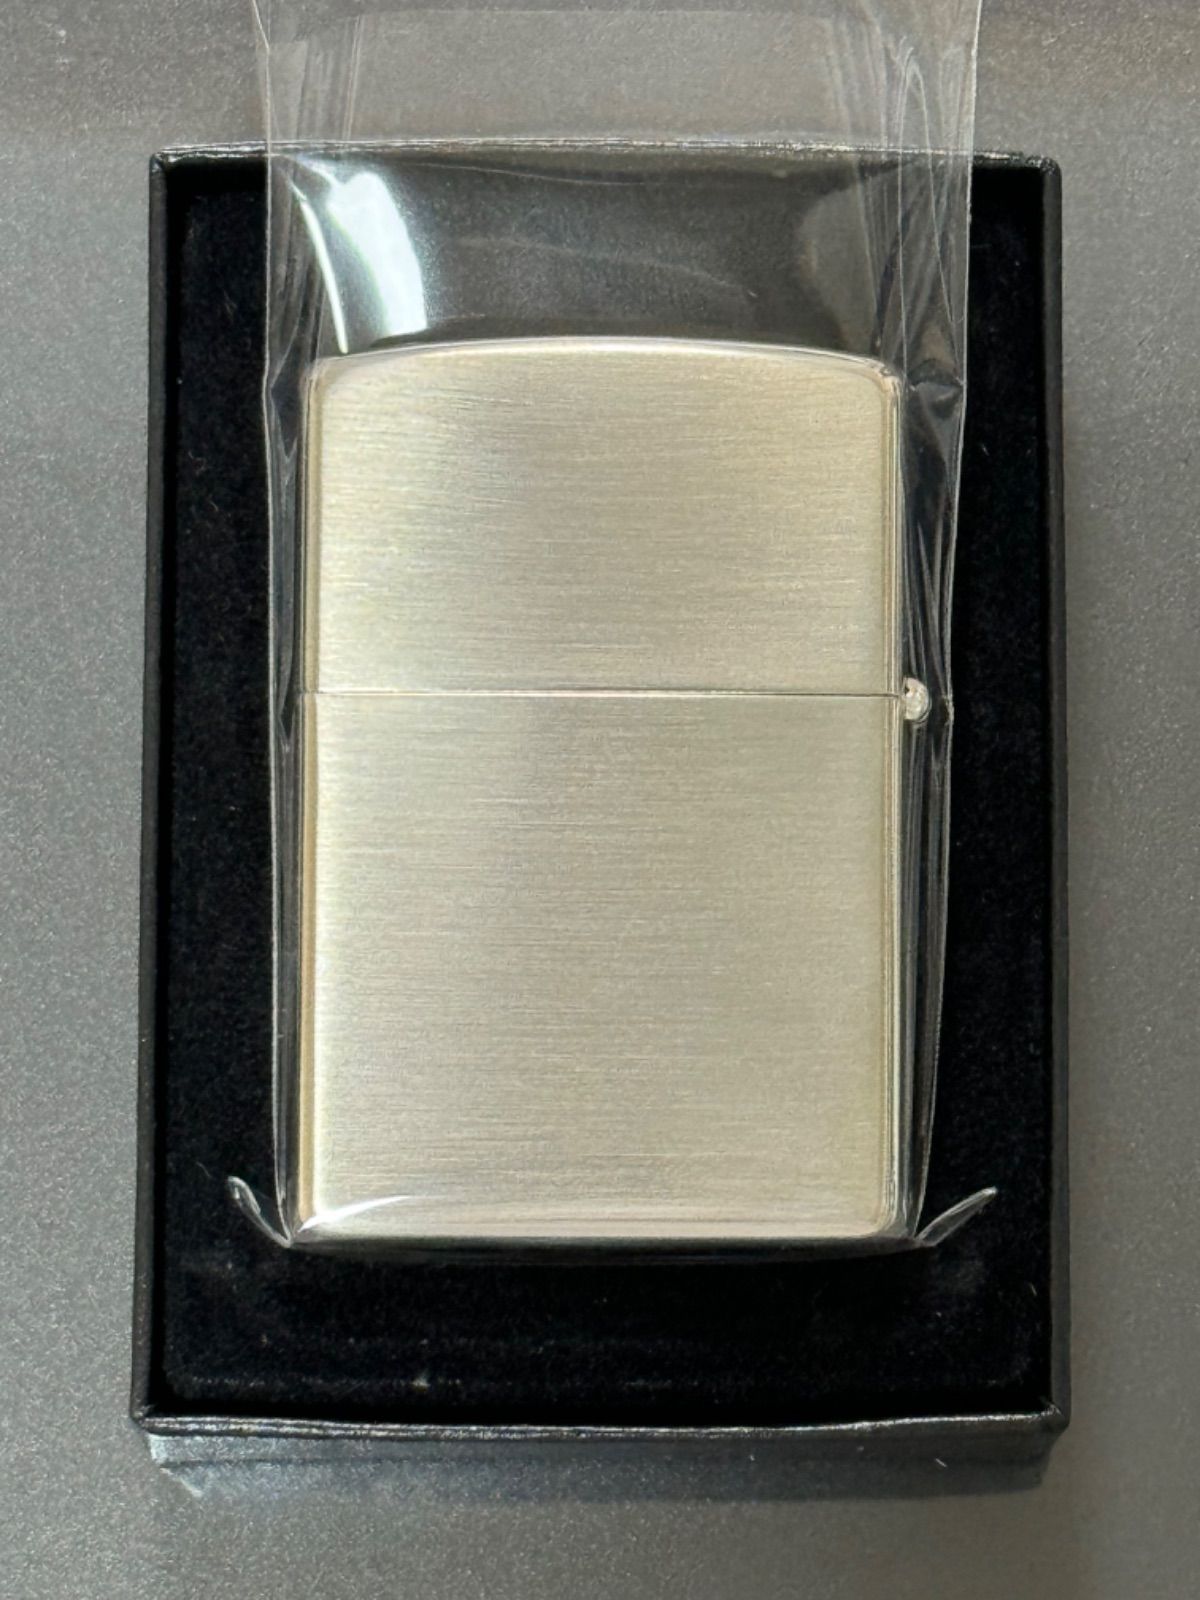 【新価格版】zippo ハイライト メンソール 限定品 希少モデル 2011年製 喫煙具・ライター